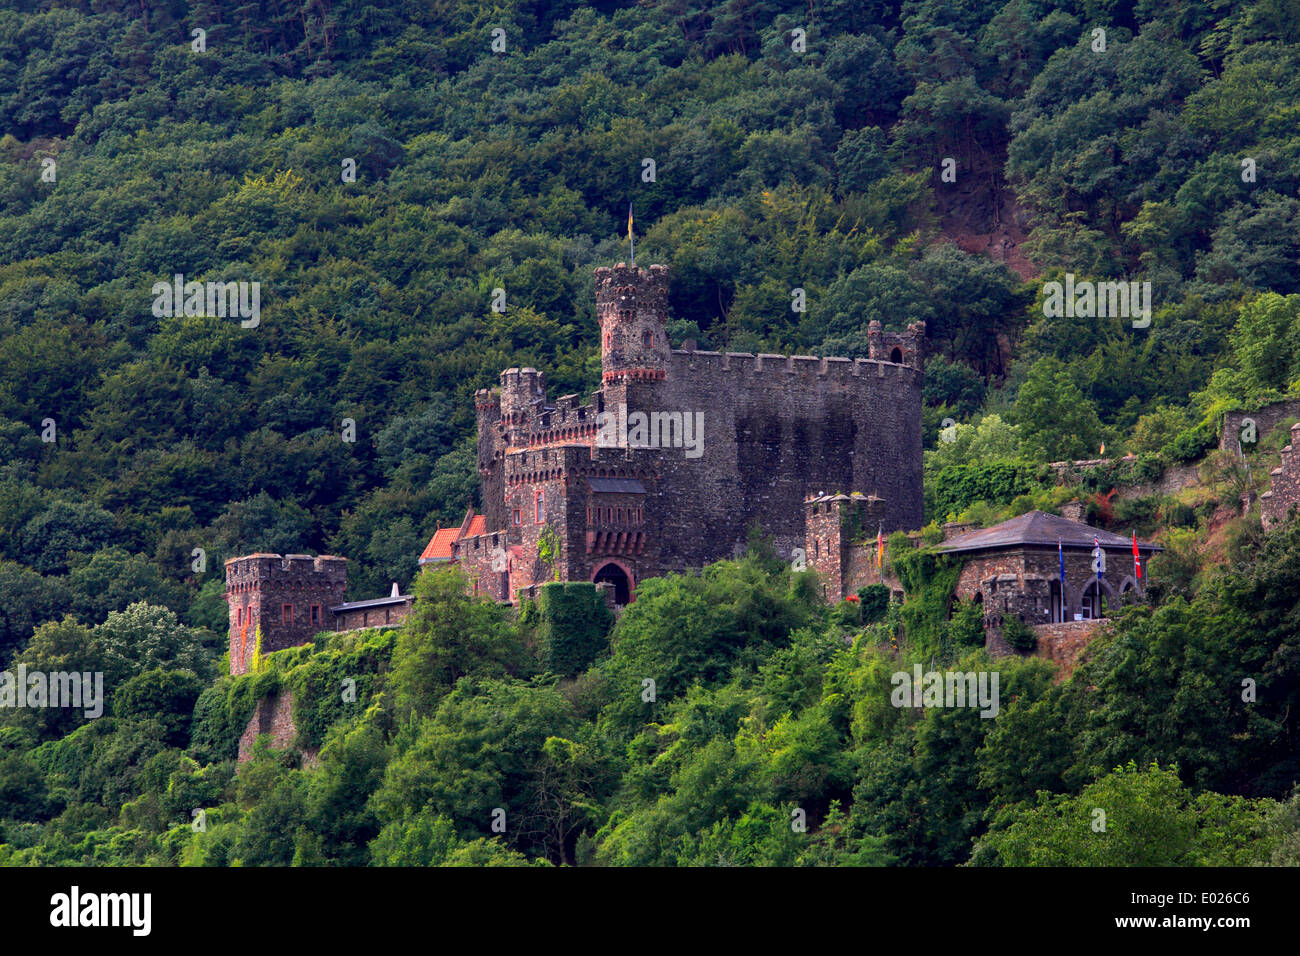 Foto von reichenstein Burg über trechtingshausen, Rheintal, Deutschland Stockfoto